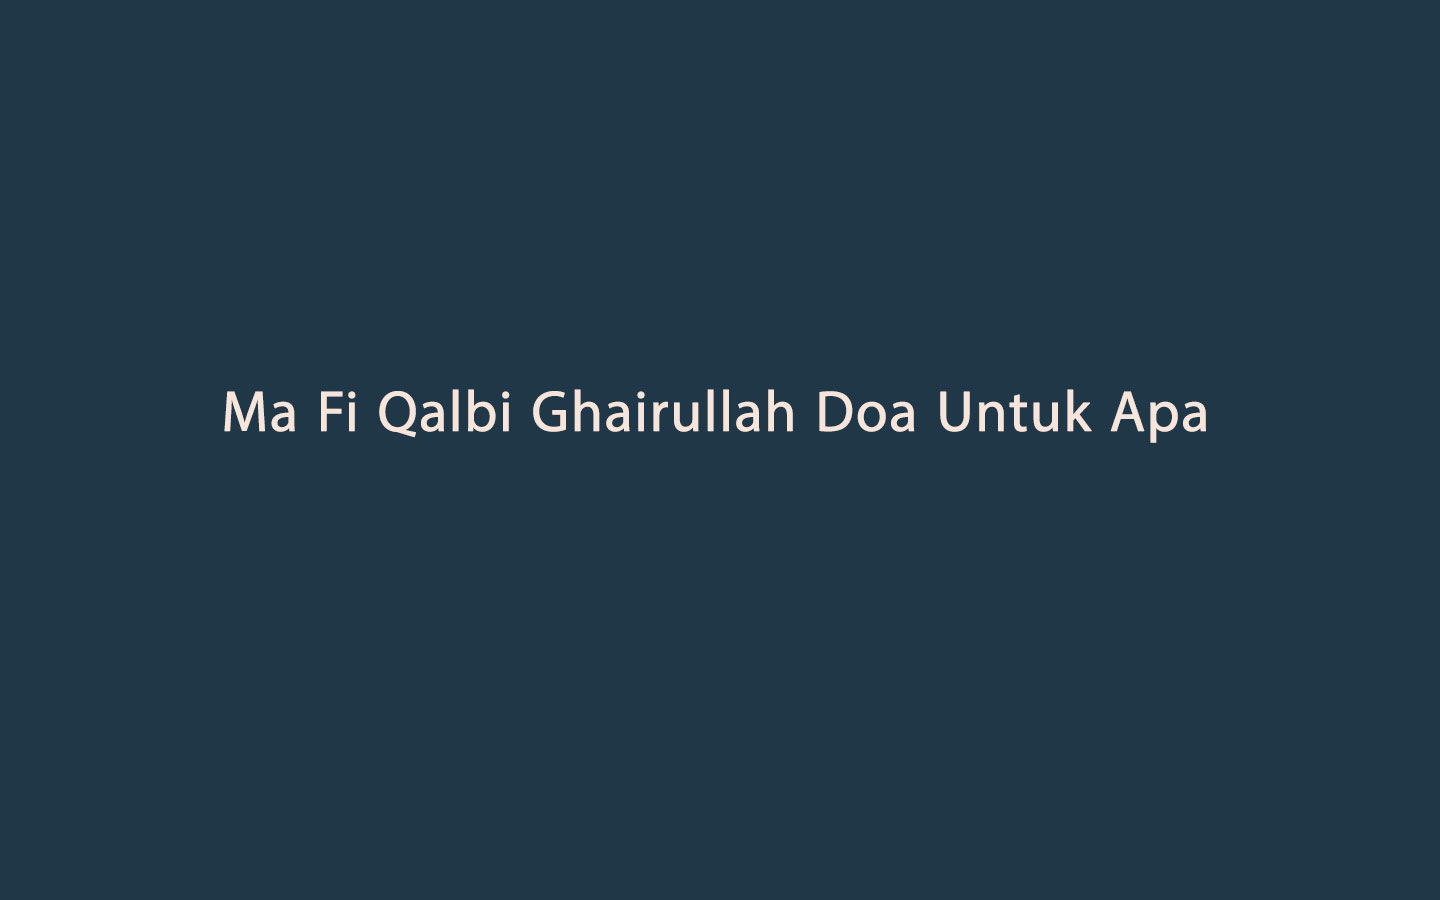 Ma Fi Qalbi Ghairullah Doa Untuk Apa